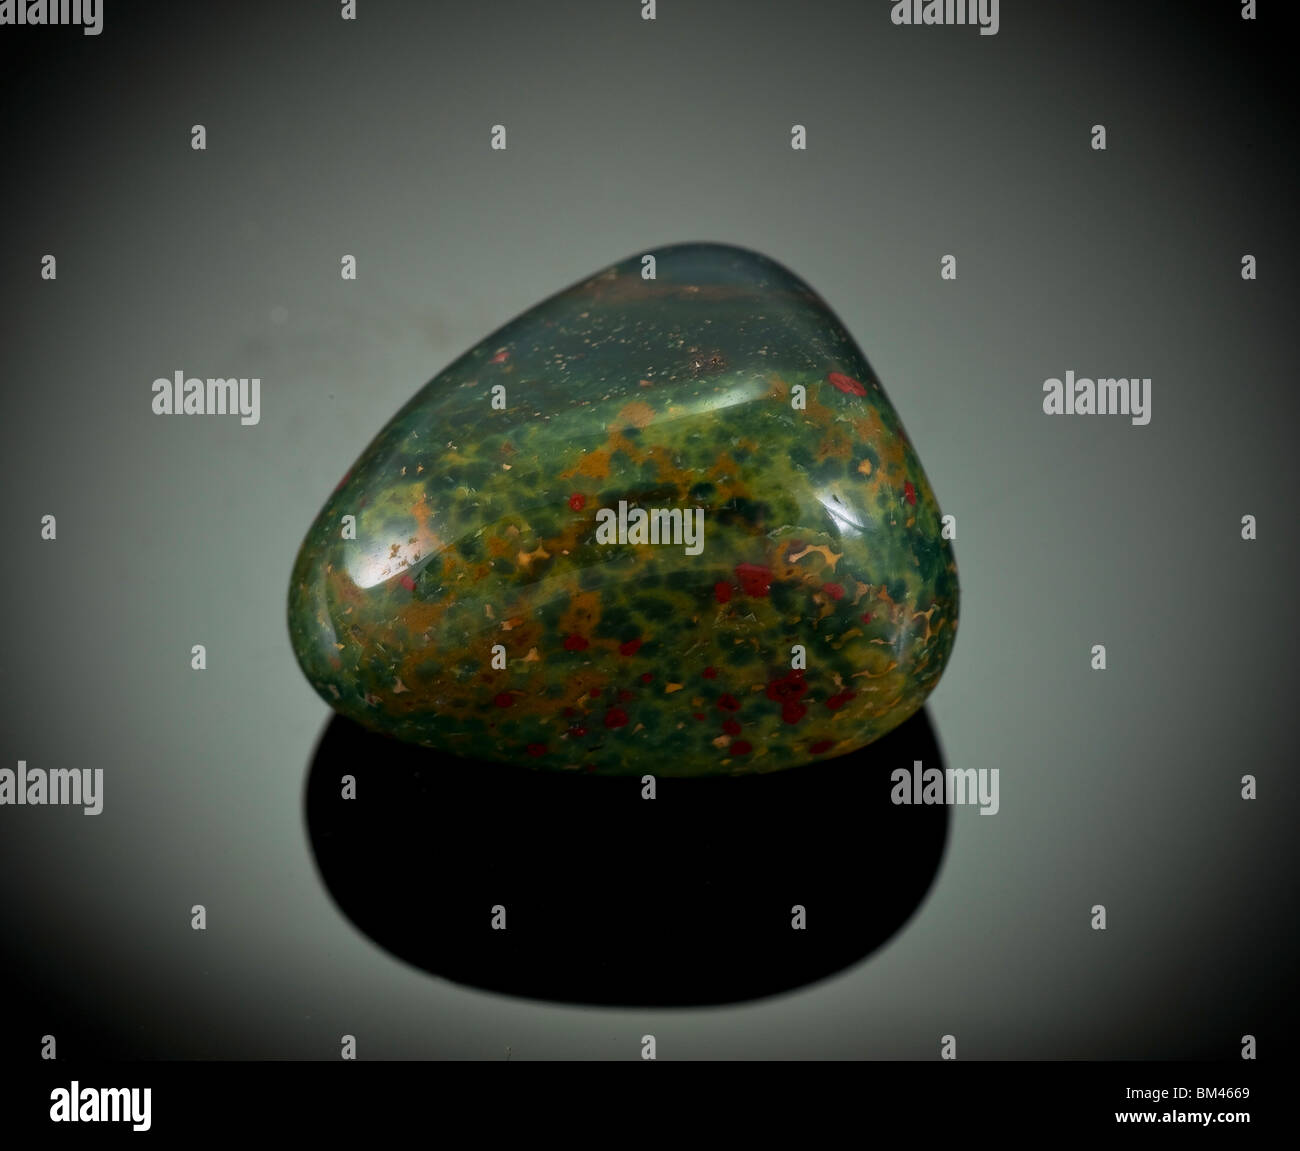 Ausschnitt eines Heliotrop oder Blutstein Edelstein auf schwarzem Hintergrund Stockfoto